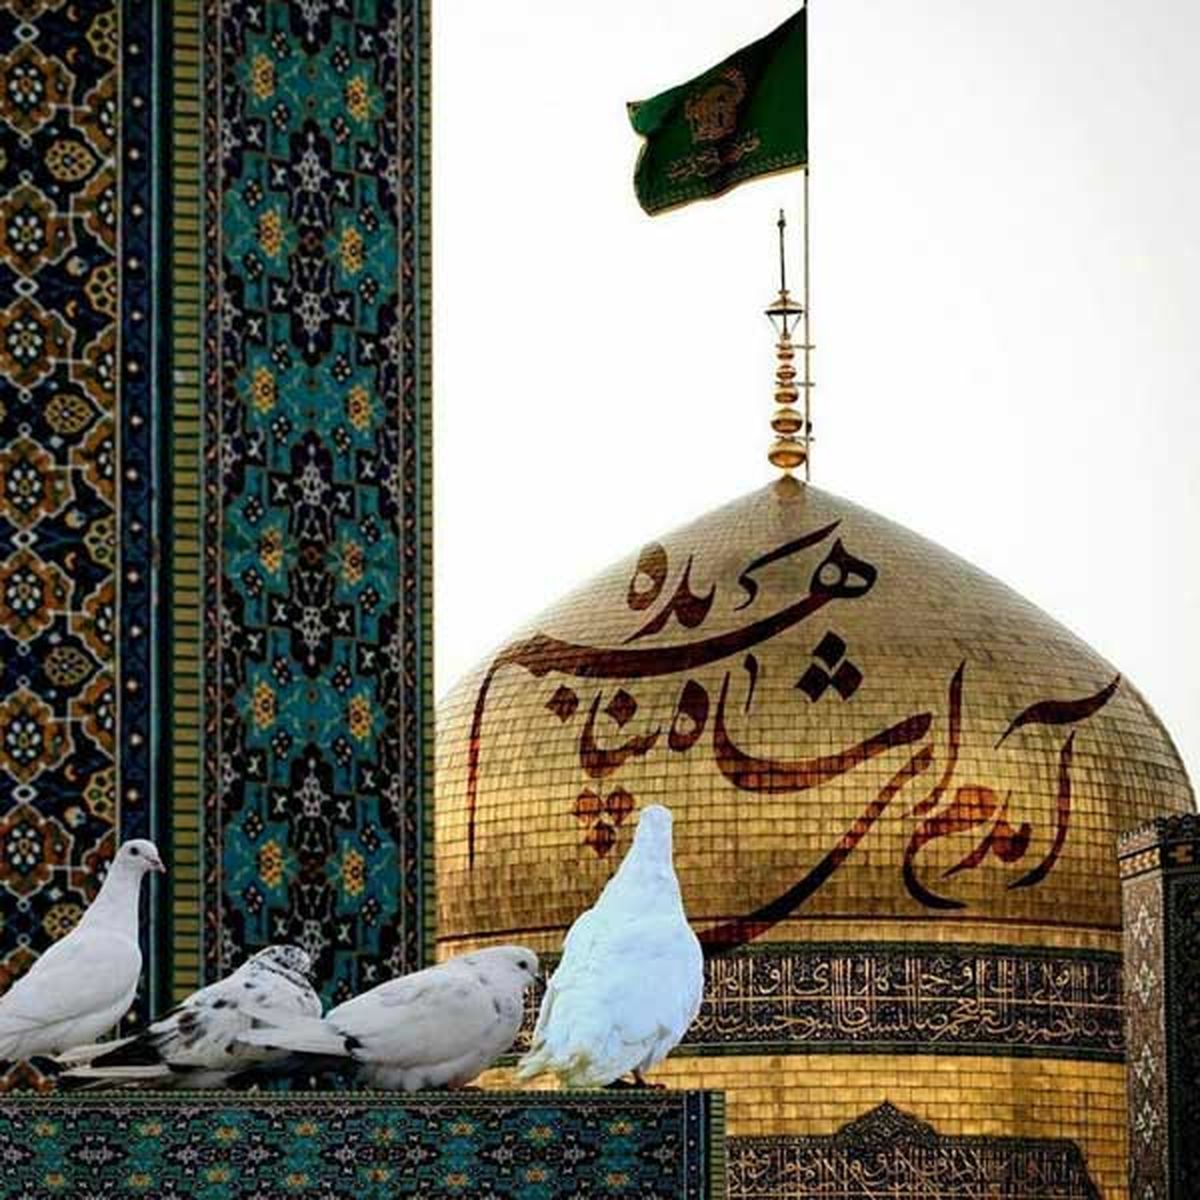  آهنگ بسیار زیبای افغانی در مورد امام رضا (ع) شاه پناهم بده